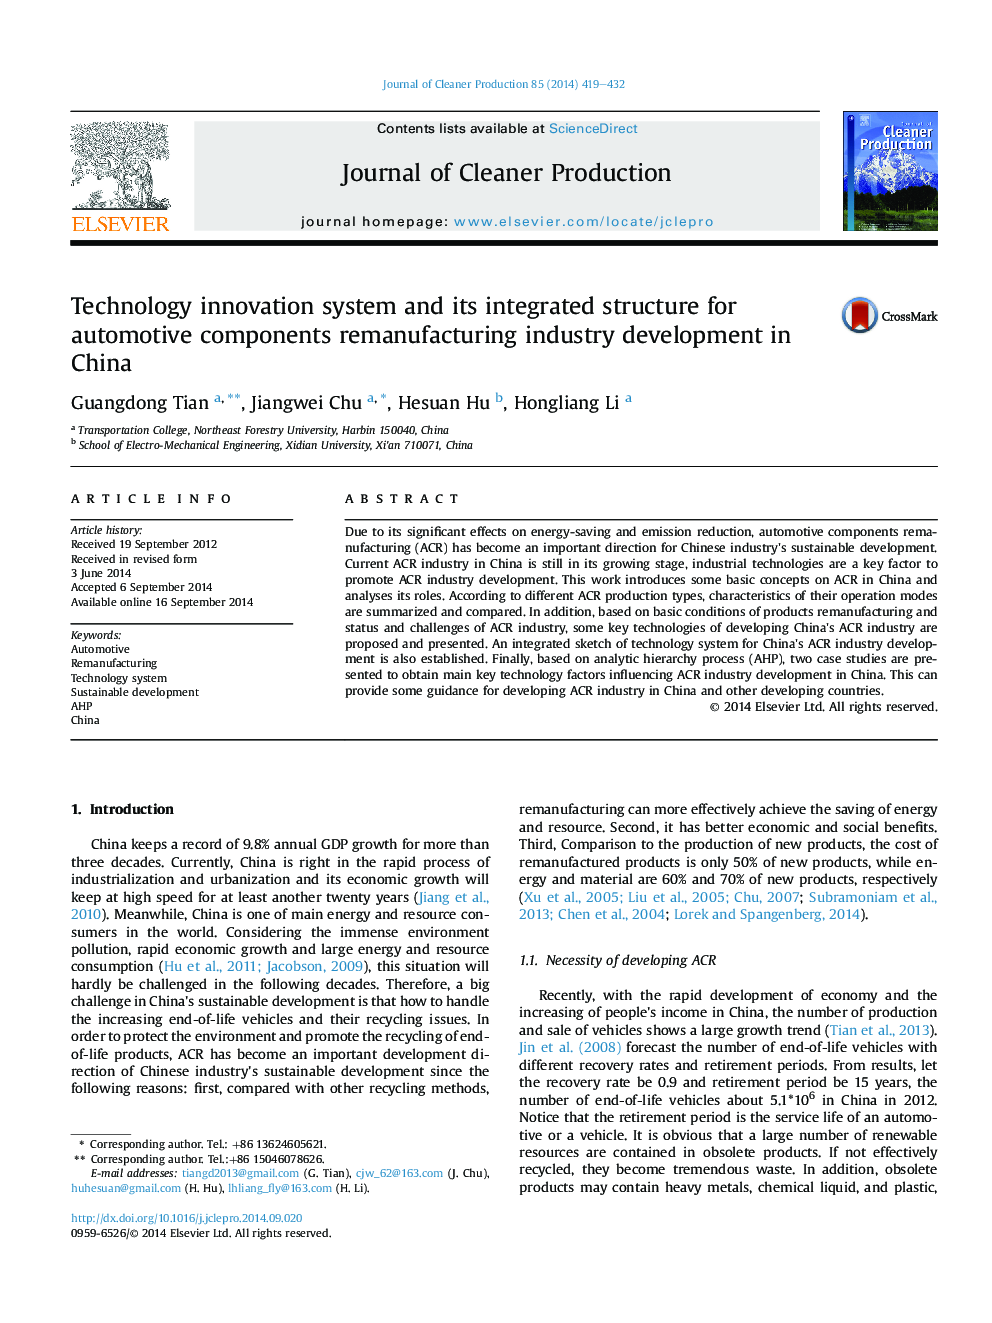 سیستم نوآوری فناوری و ساختار یکپارچه برای اجزای خودرو بازسازی صنعت در چین 